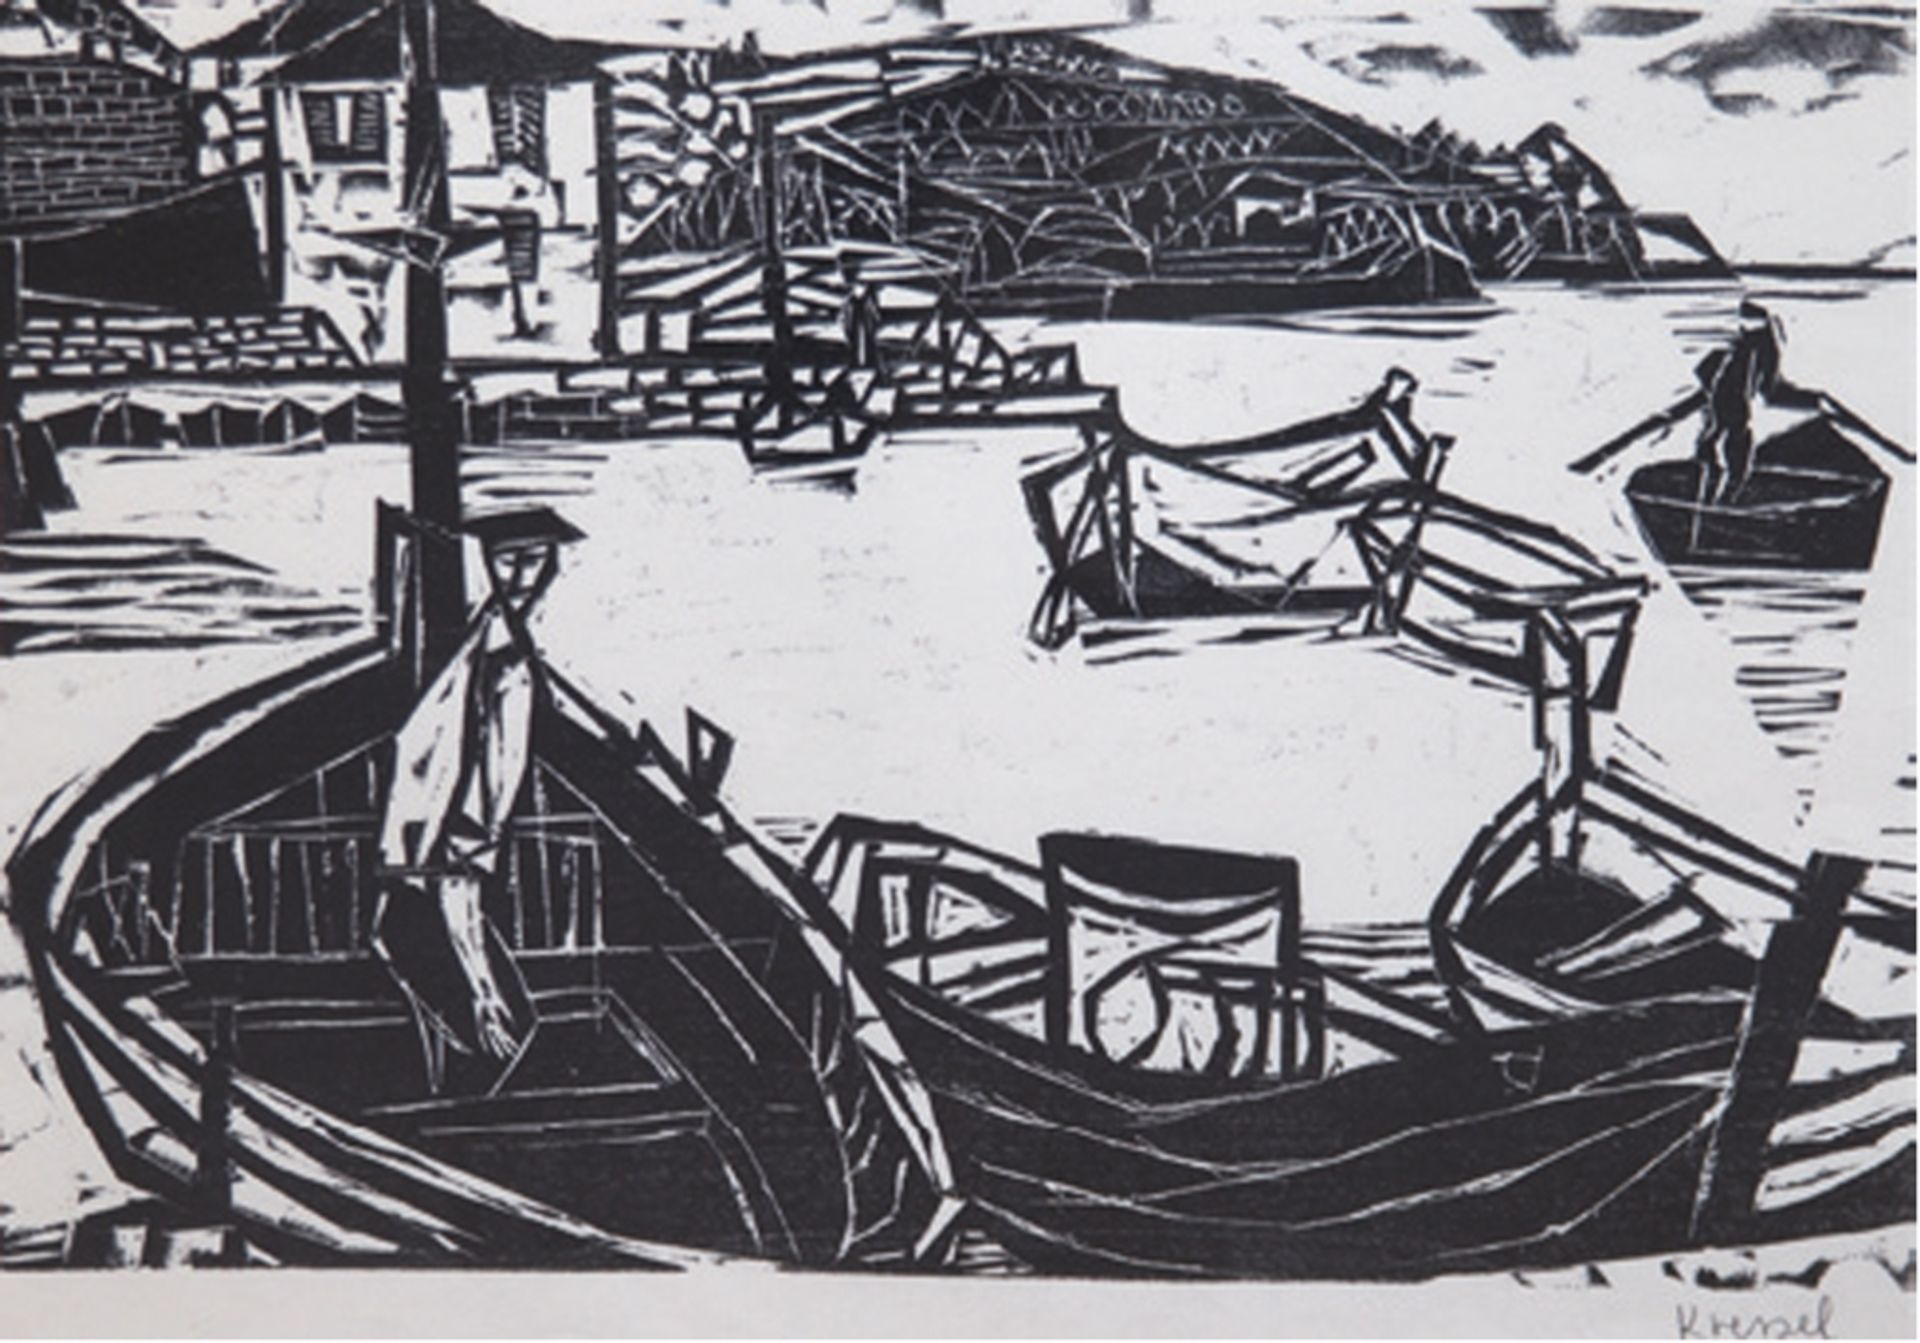 Kressel, Dieter (1925-2015) "Hafen von Venere-Italien", Holzschnitt, handsign. u.r., 30,5x41,5 cm, 